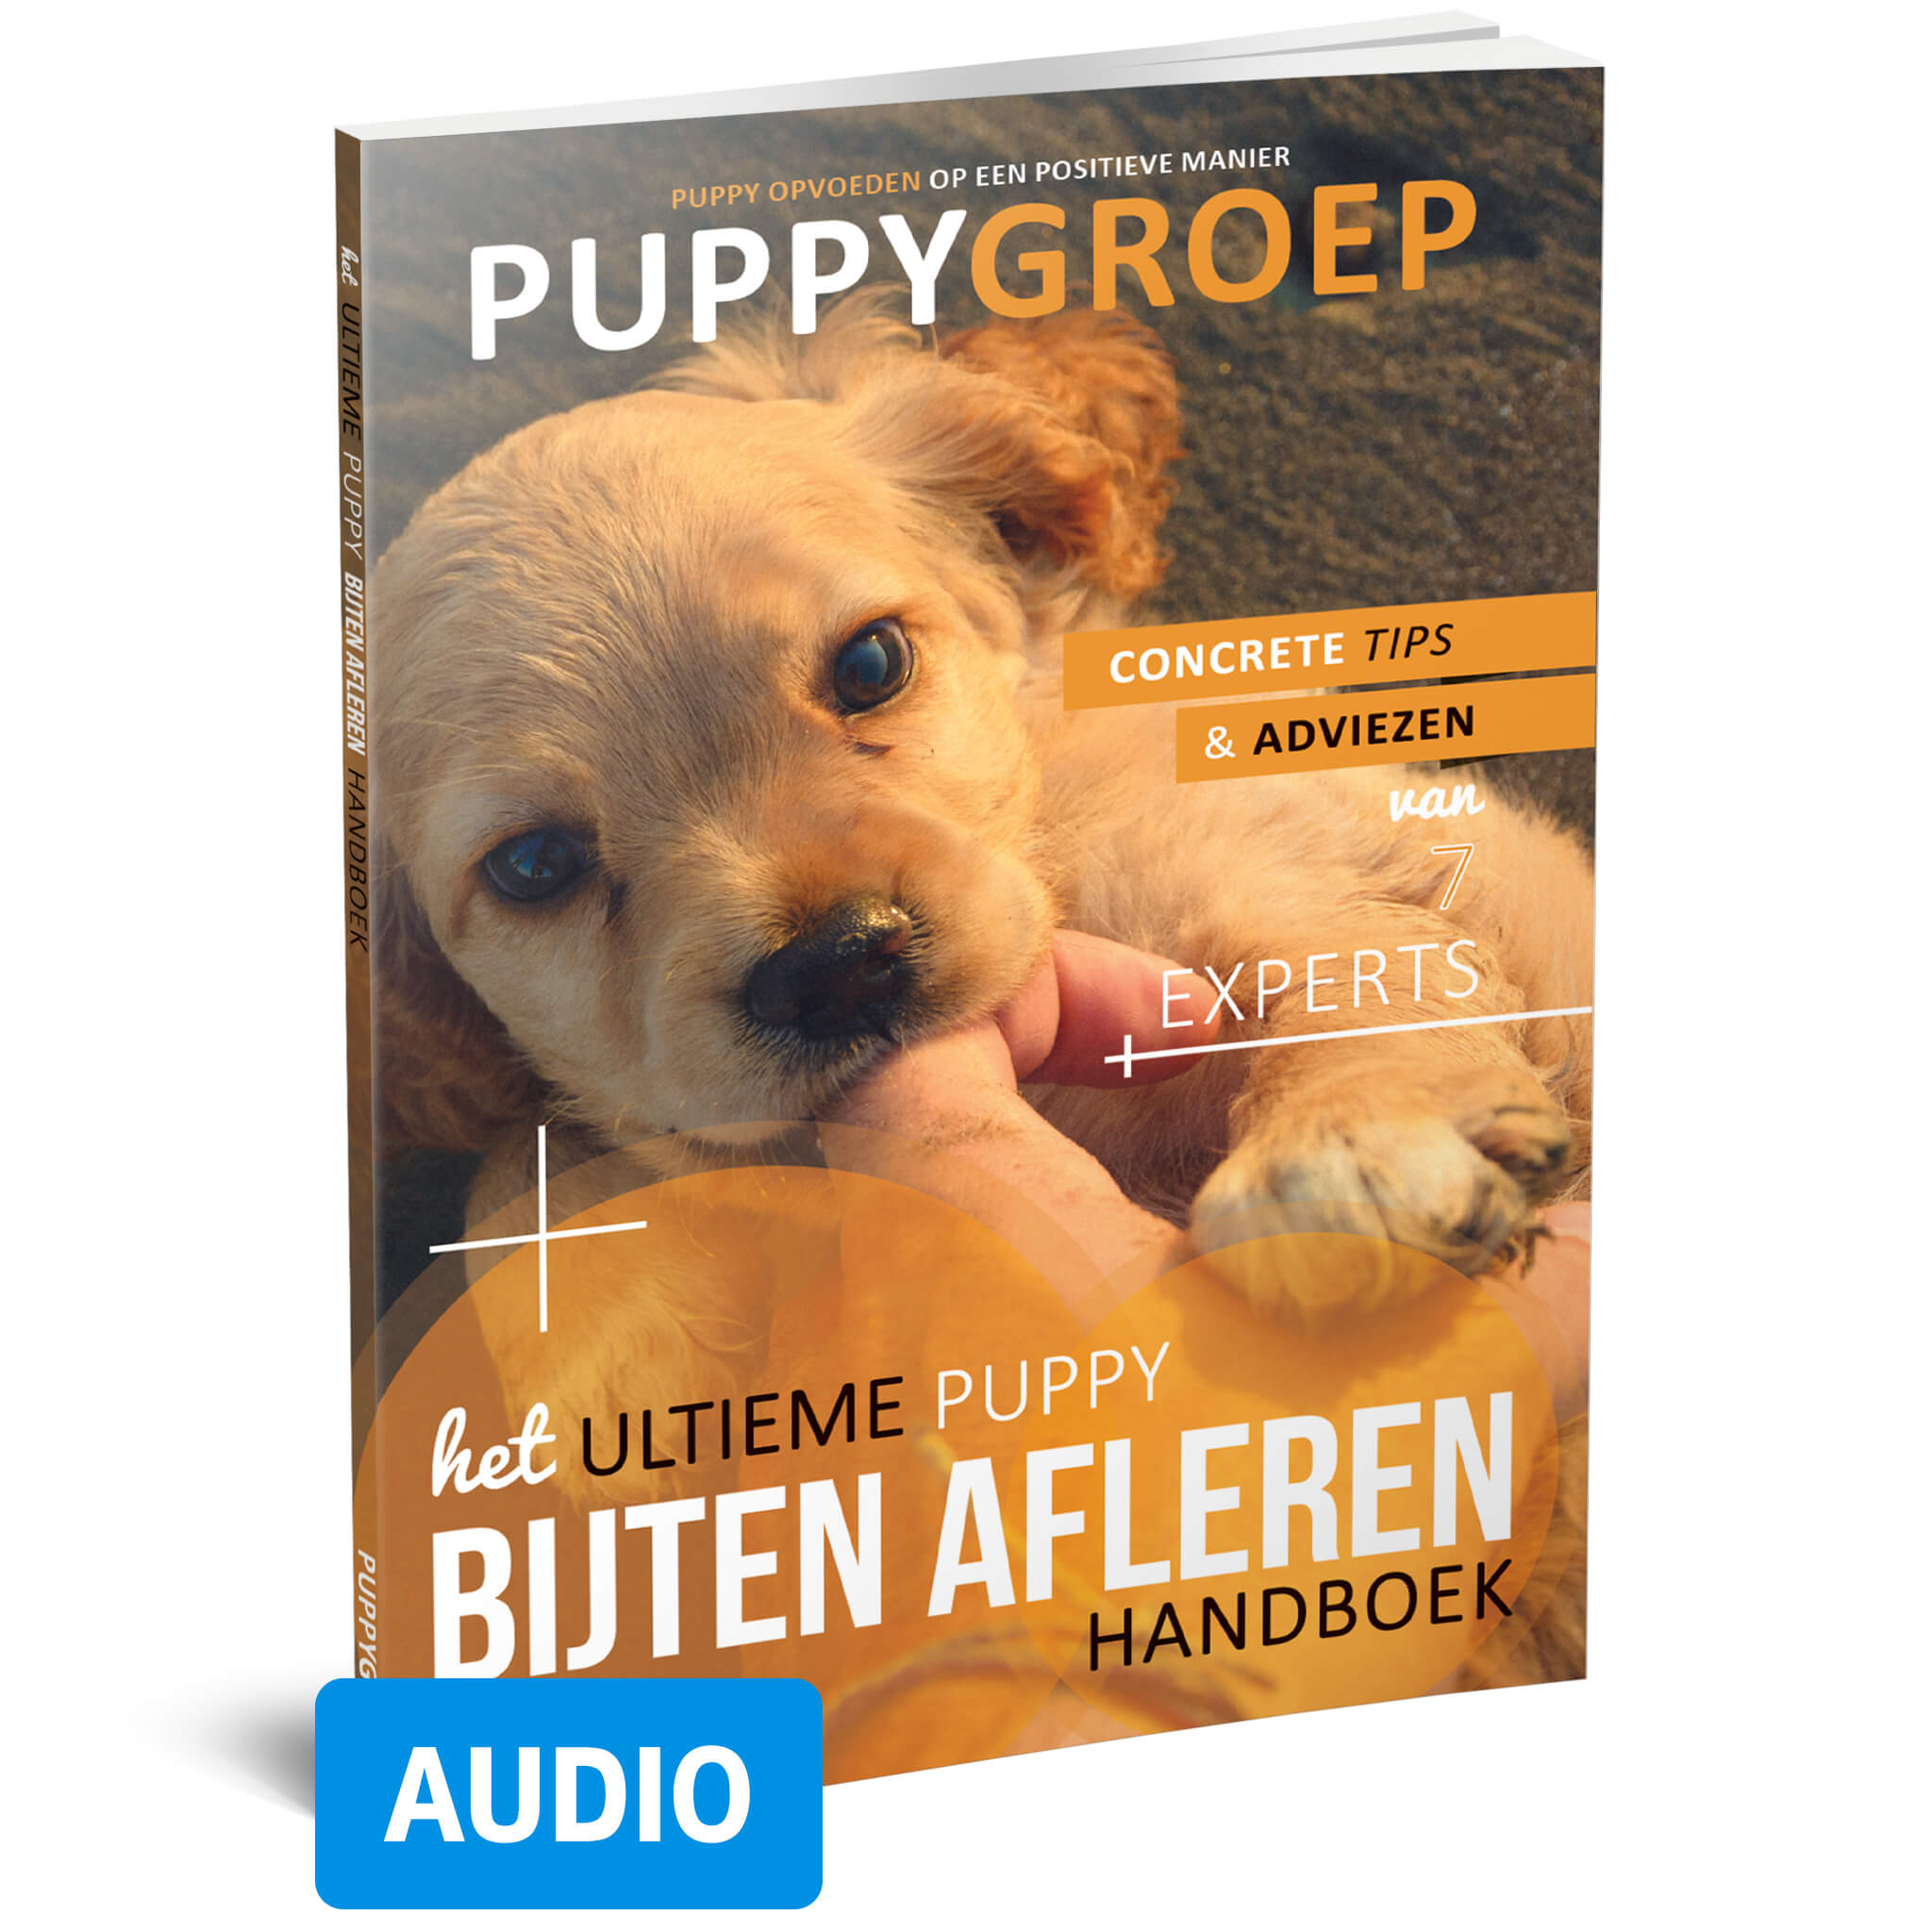 Het Ultieme Puppy Bijten Afleren Handboek (luisterboek)